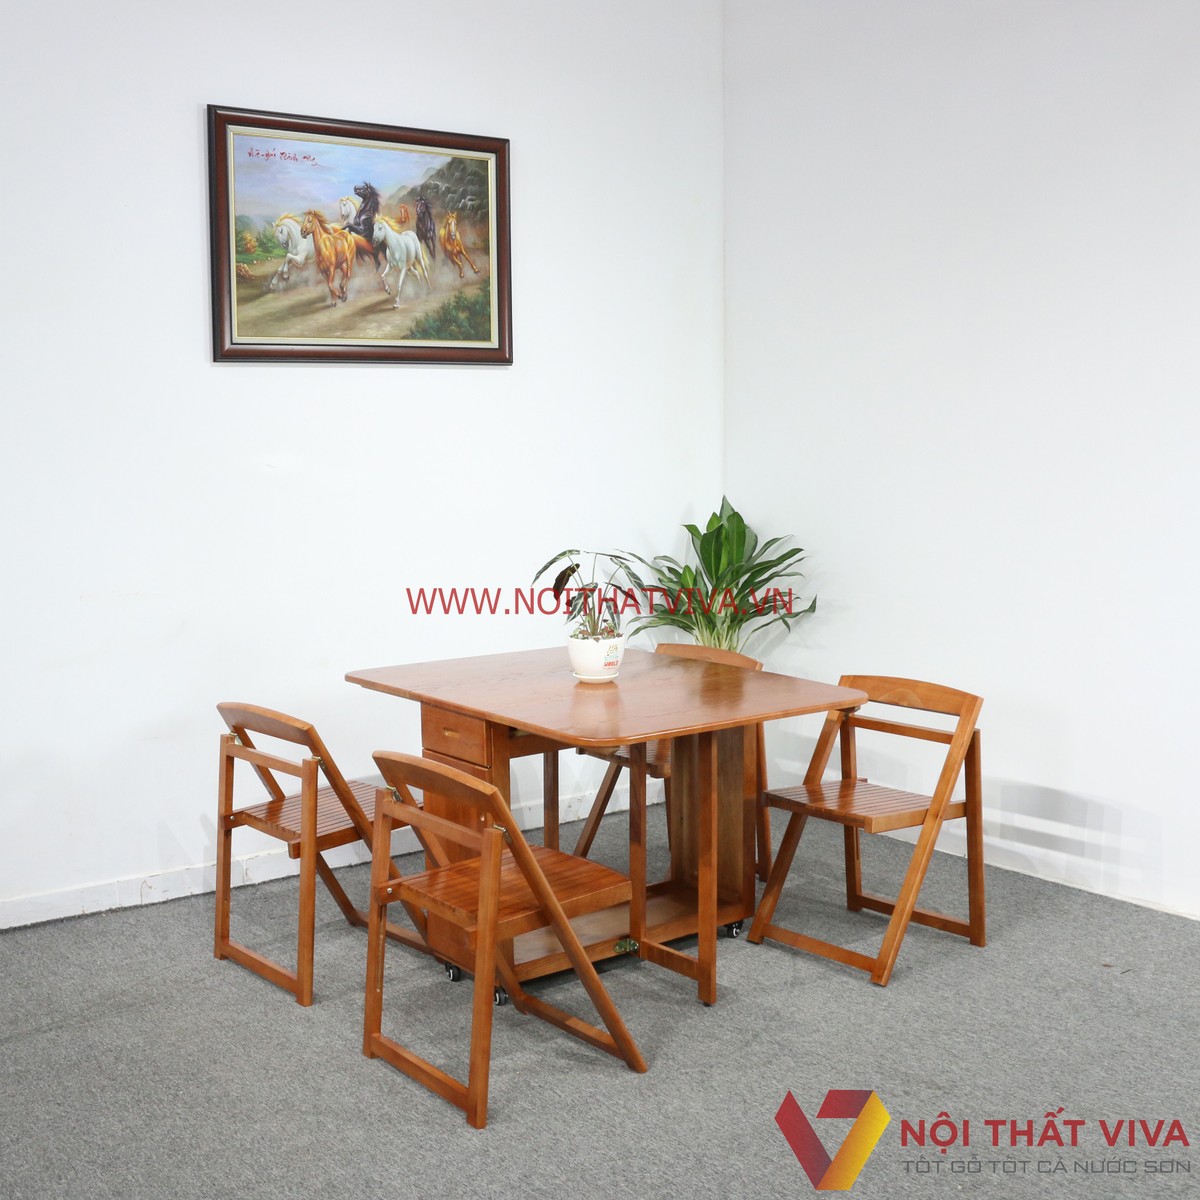 Các mẫu thiết kế bàn ăn gỗ sồi Nga 4 ghế nhỏ gọn cho căn hộ hiện đại 